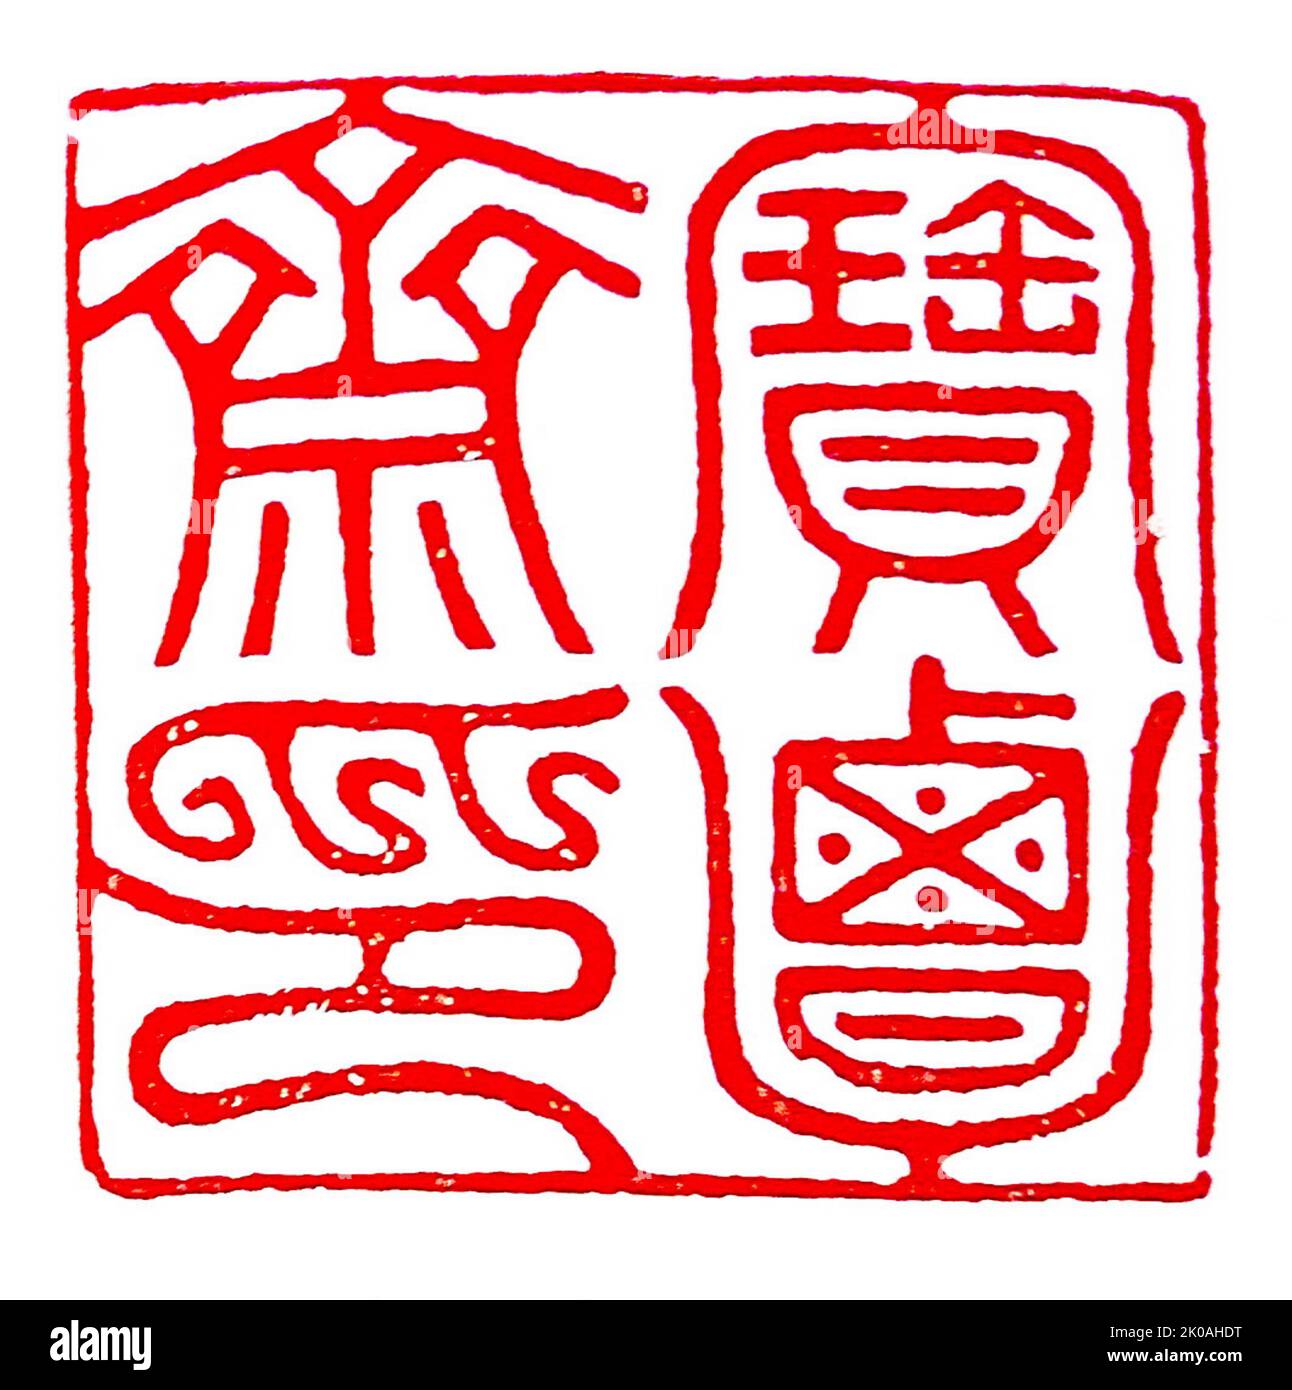 Siegelserie aus der Joseon-Dynastie, Korea: Siegel, verwendet von Kim Chonghui, einem berühmten Kalligraphen zu der Zeit, der für seine gekonnten Werke bekannt war Stockfoto